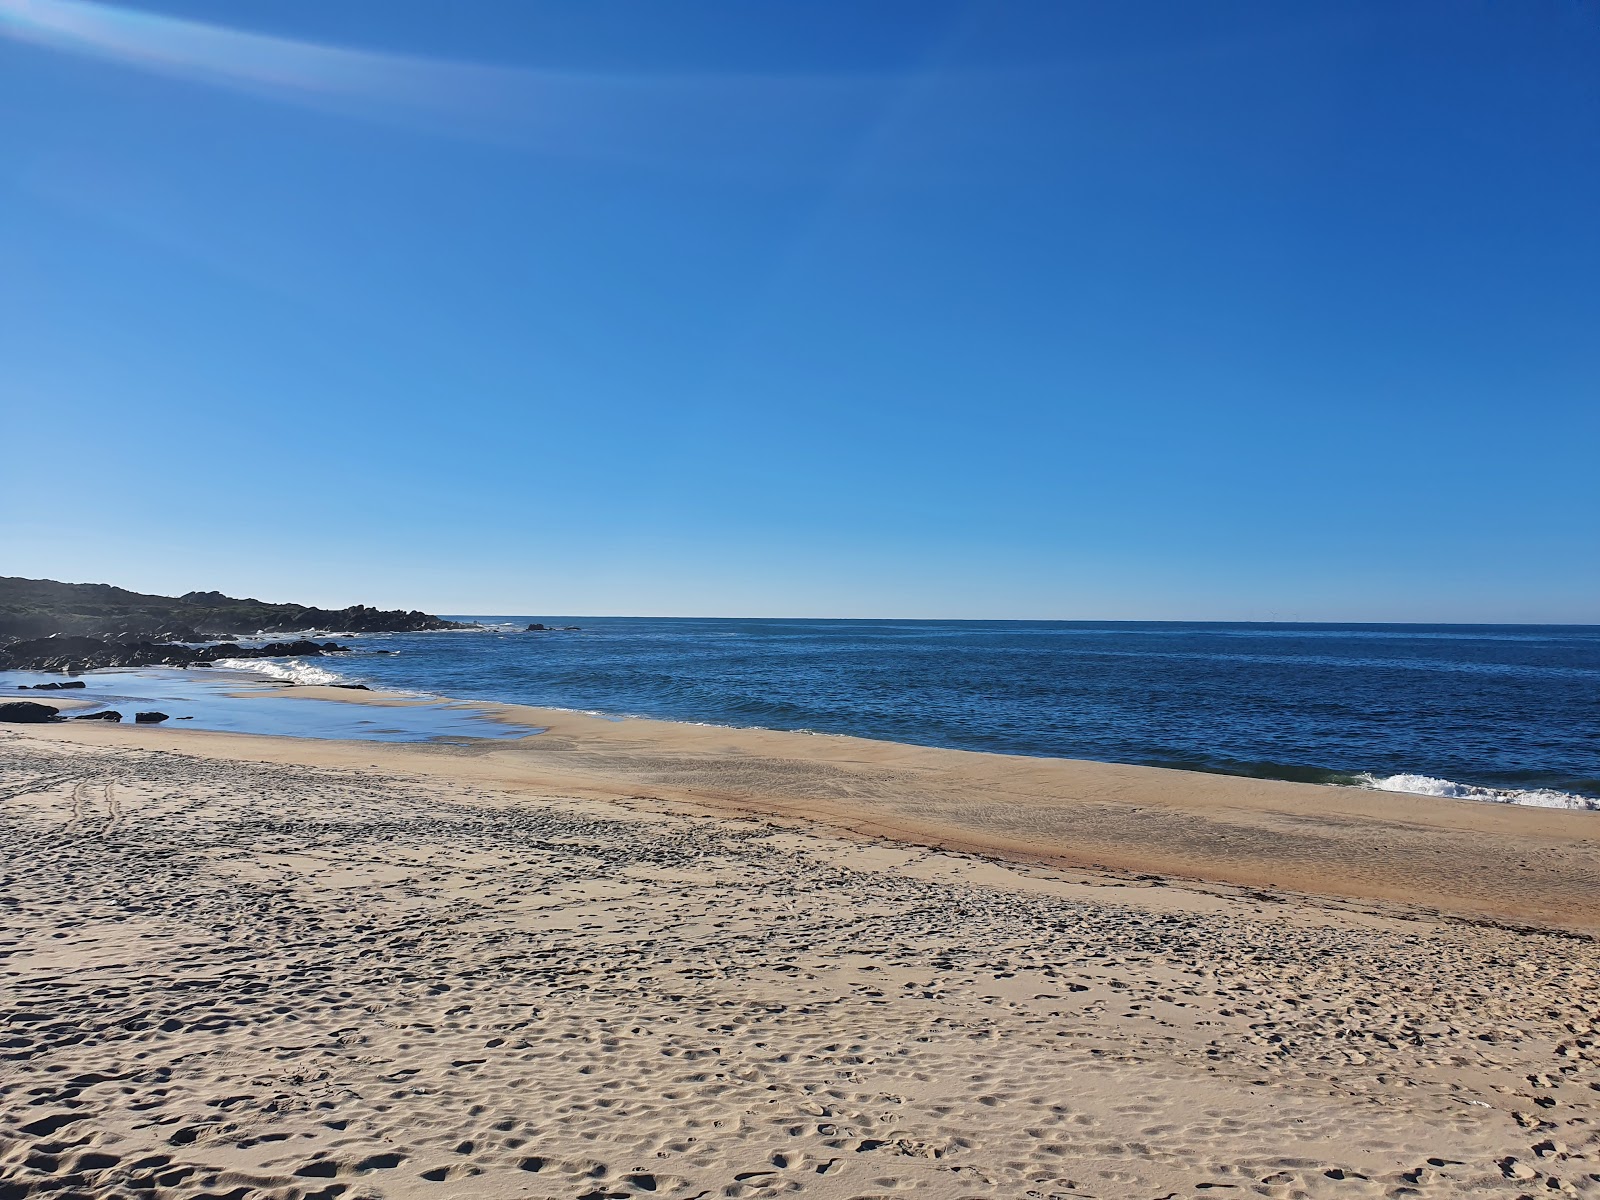 Fotografie cu Praia do Paco cu o suprafață de nisip fin alb